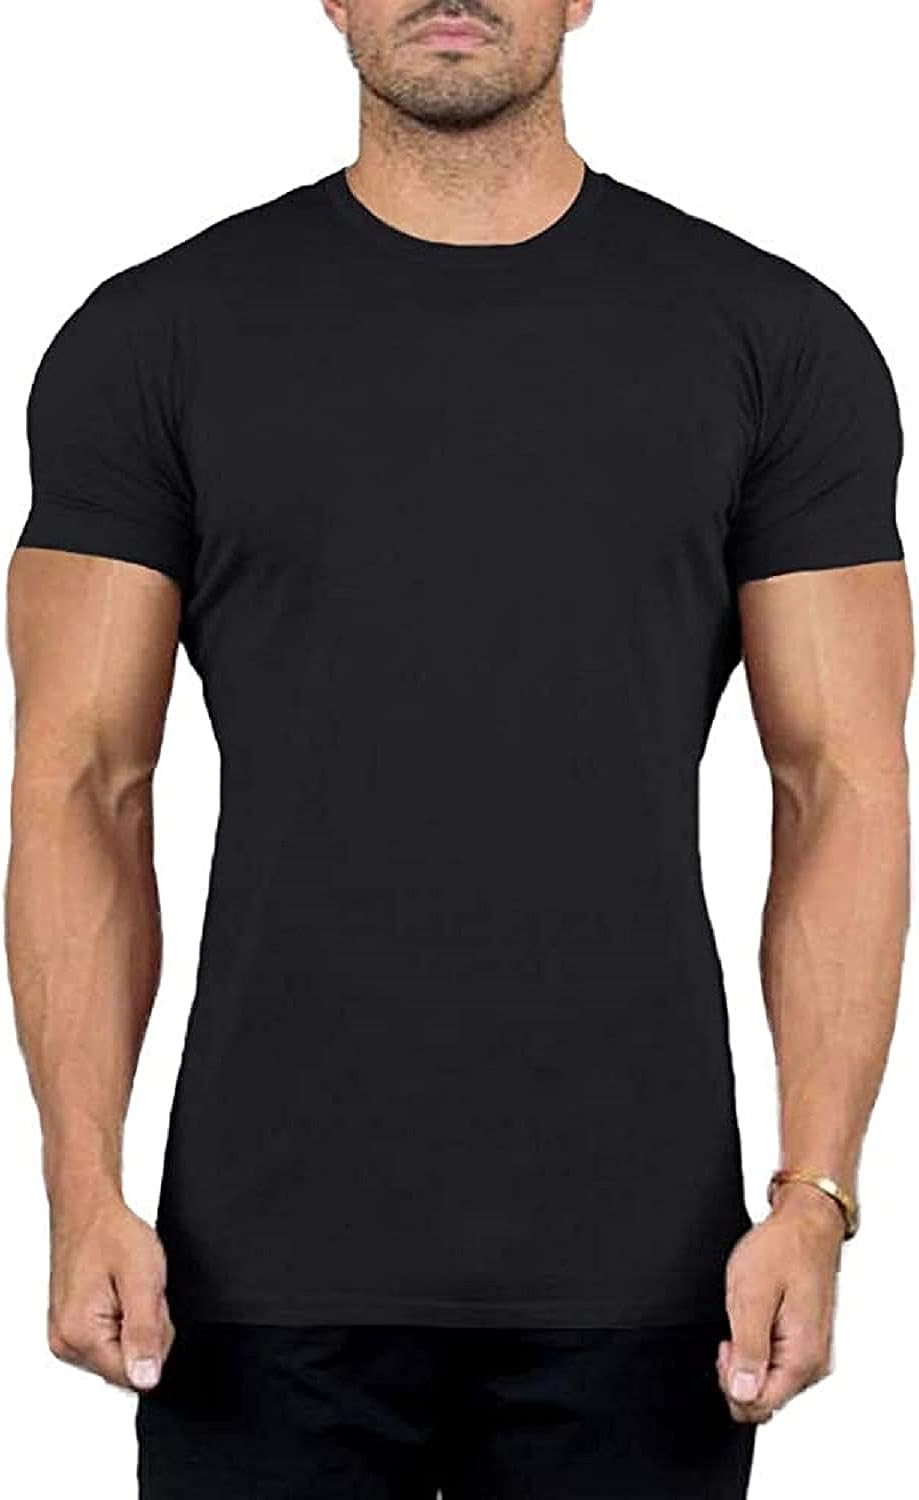 SOCKS'NBULK Mens Cotton Crew Neck Short Sleeve T-Shirts Mix Colors Bulk Pack